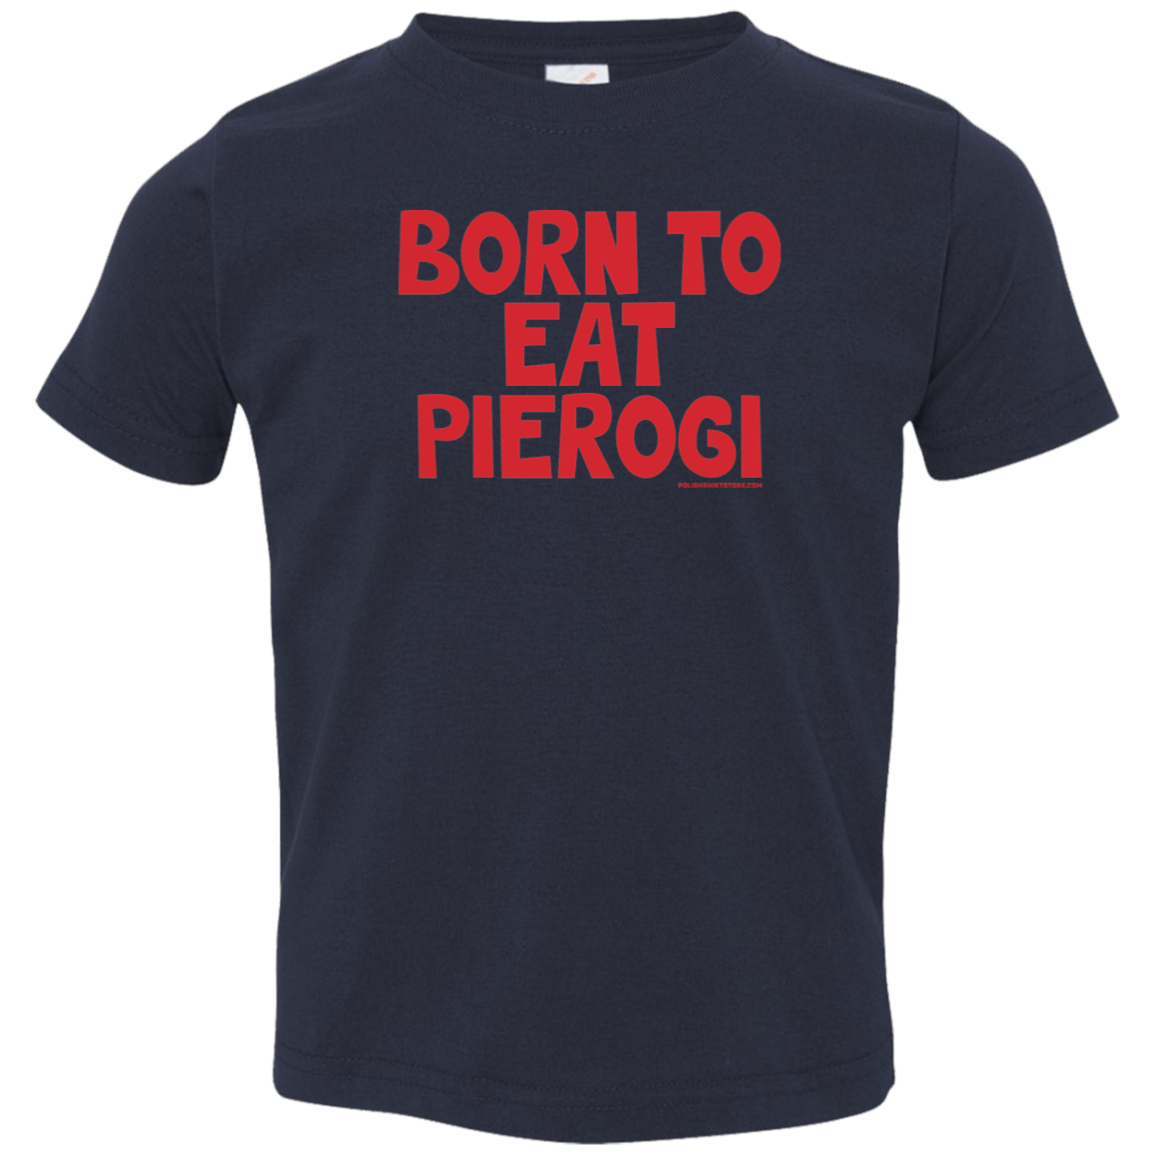 Born To Eat Pierogi Infant & Toddler T-Shirt Apparel CustomCat Toddler T-Shirt Navy 2T